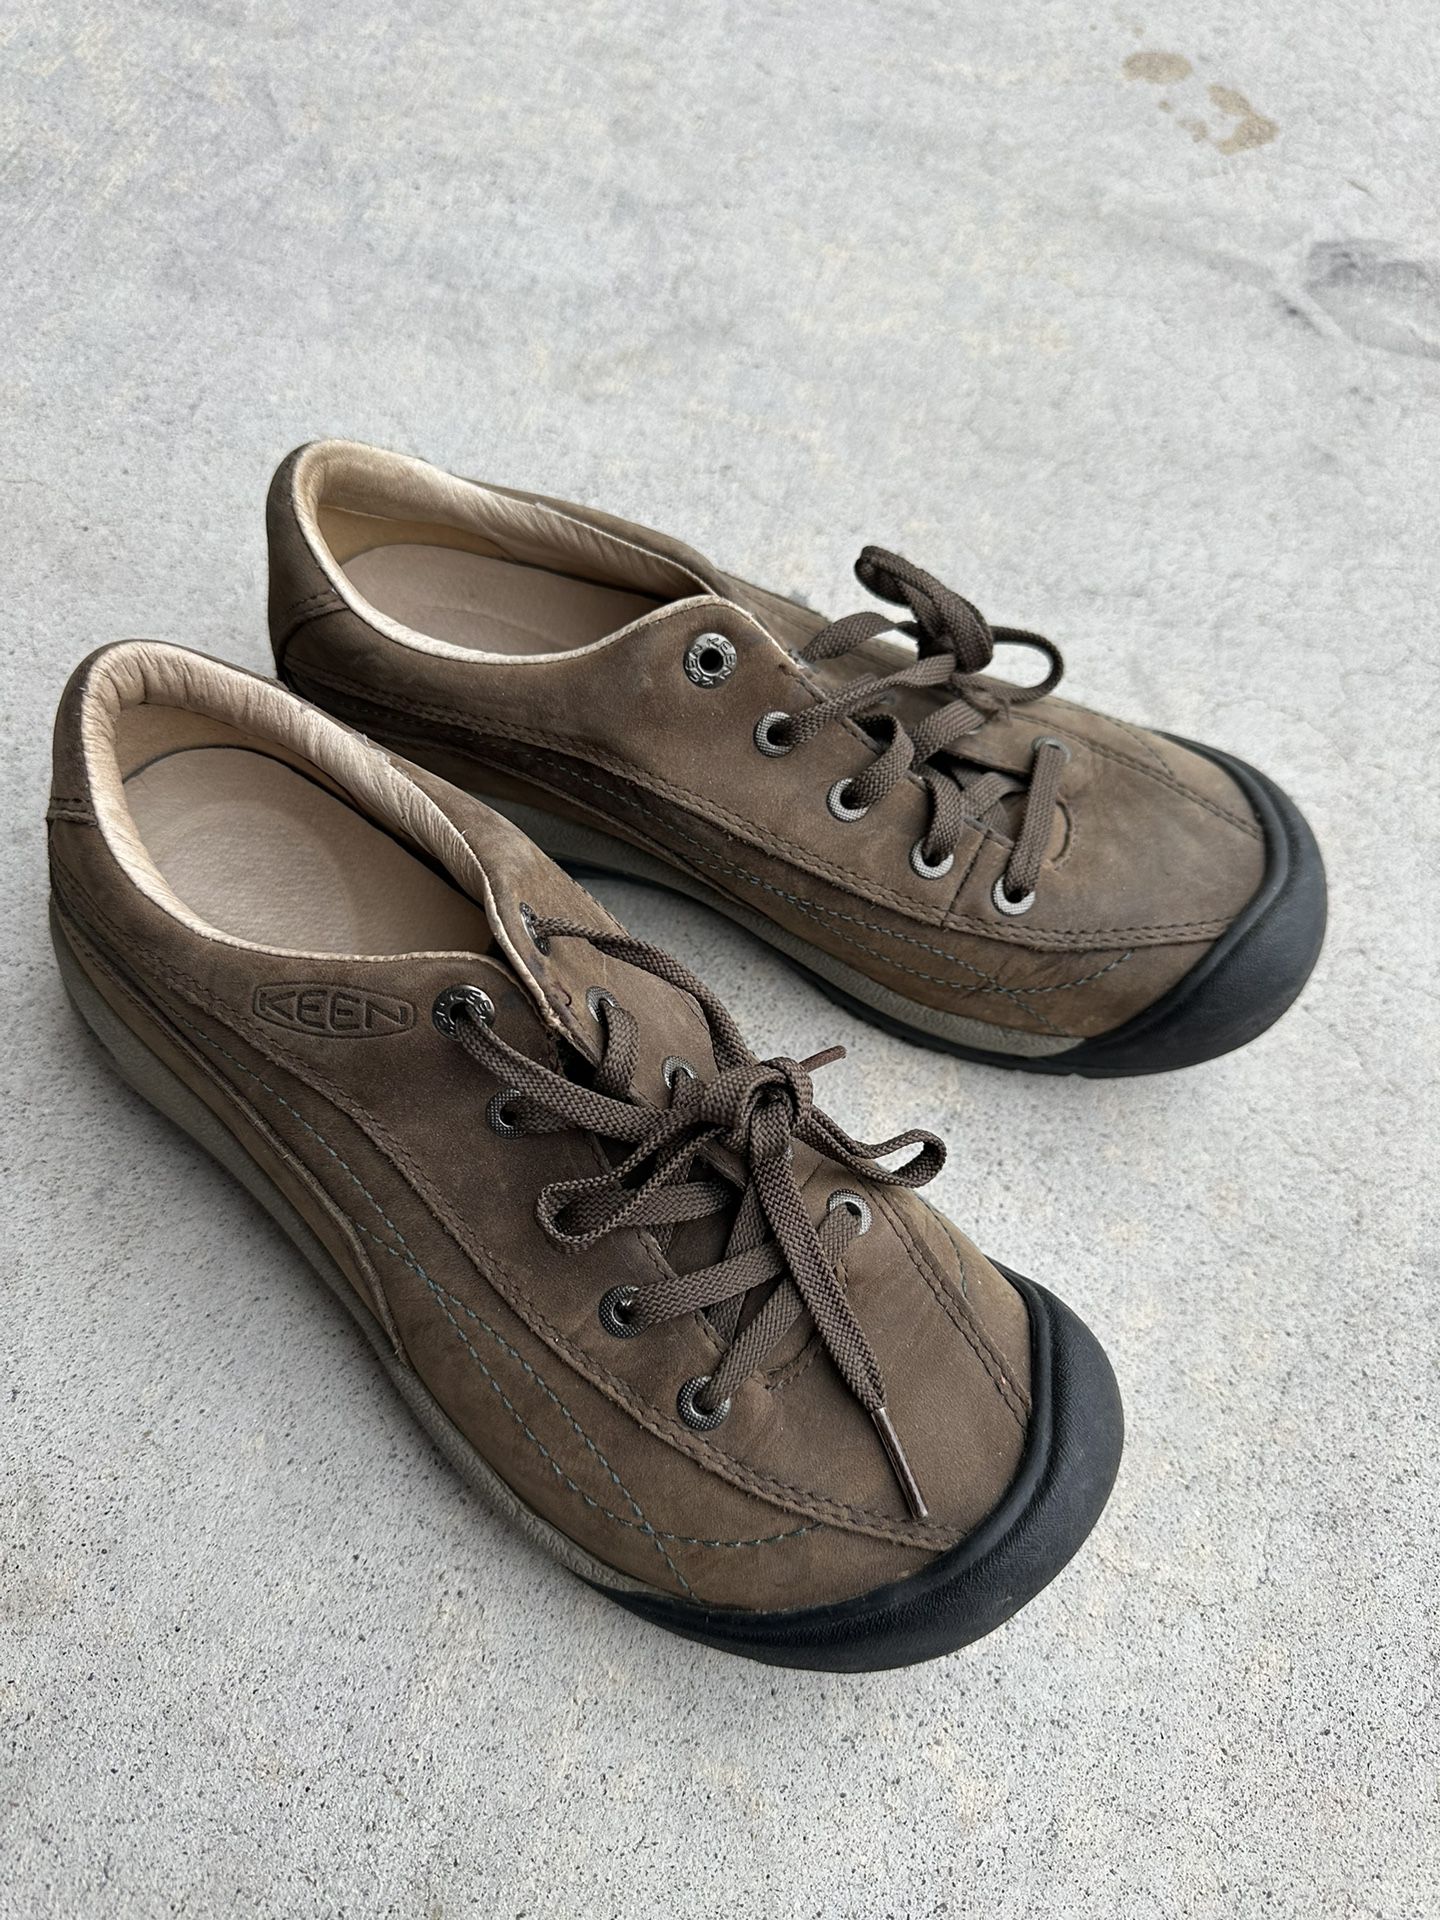 Keen Toyah Women's Shoes